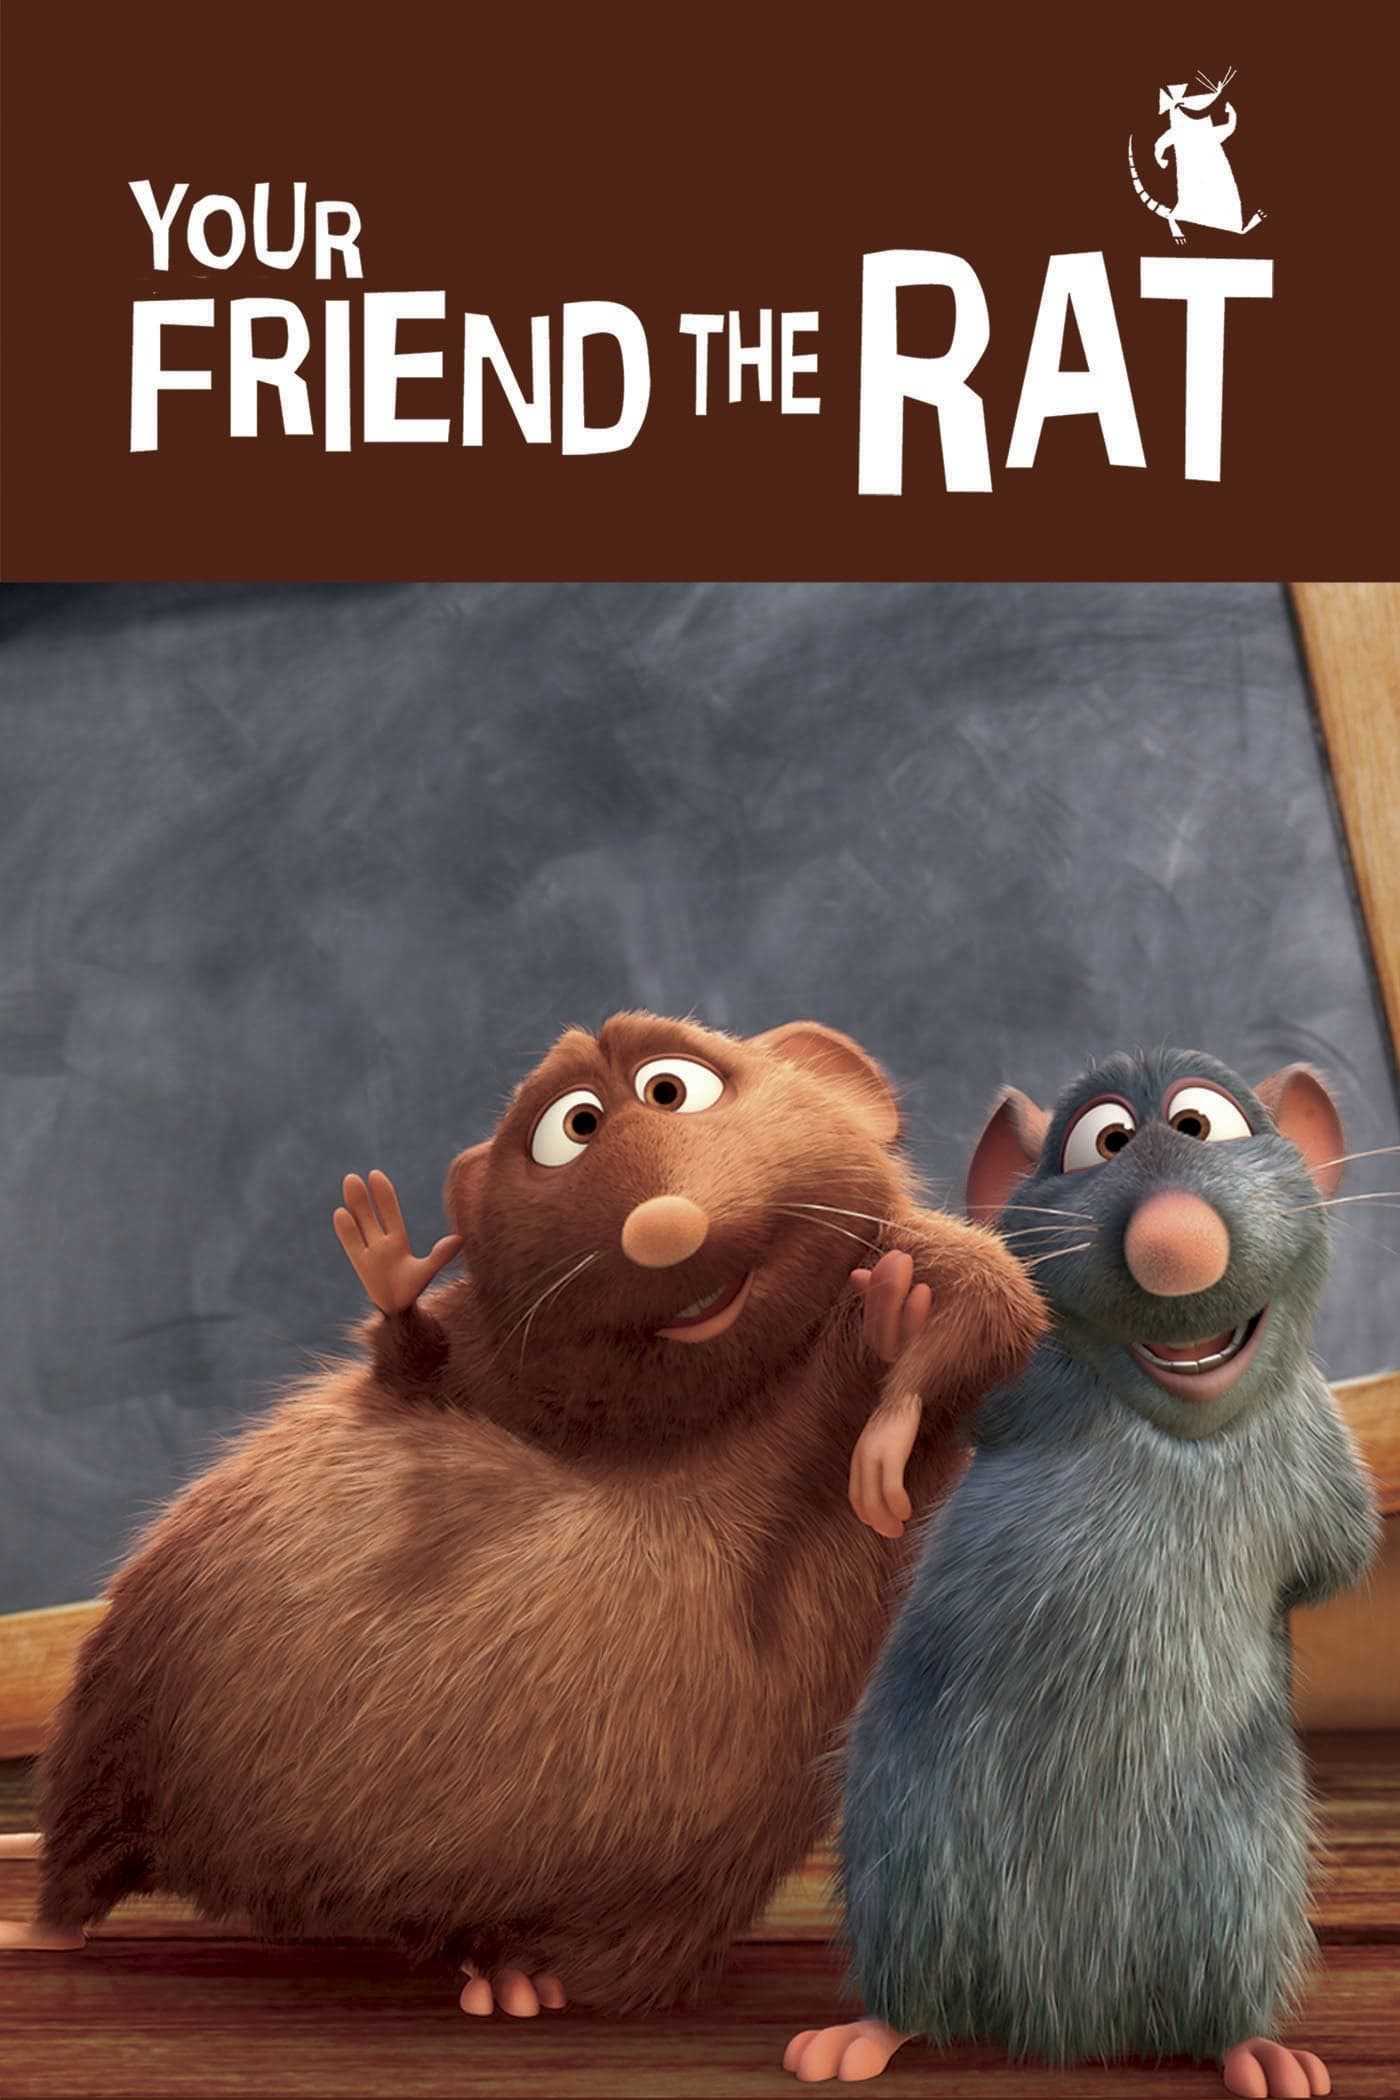 Your friend the rat - Your friend the rat